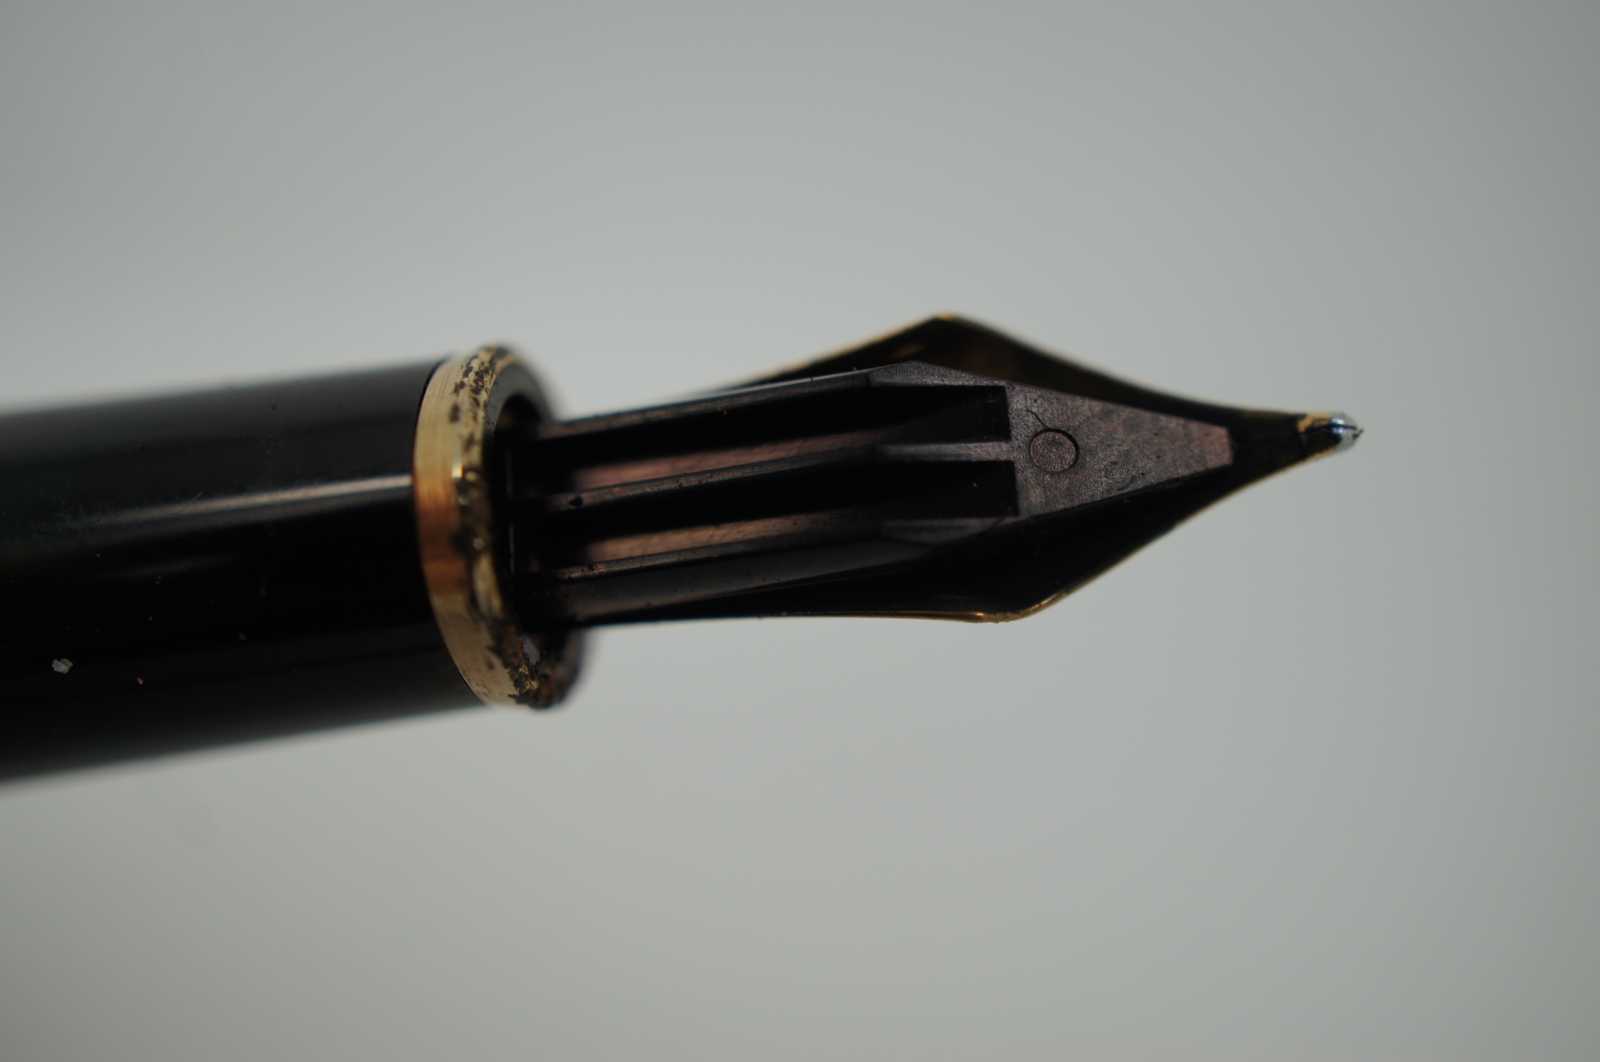 MONT BLANC Meisterstück 14K 4810 New In Box Montblanc Fountain Pen Fancy Pen